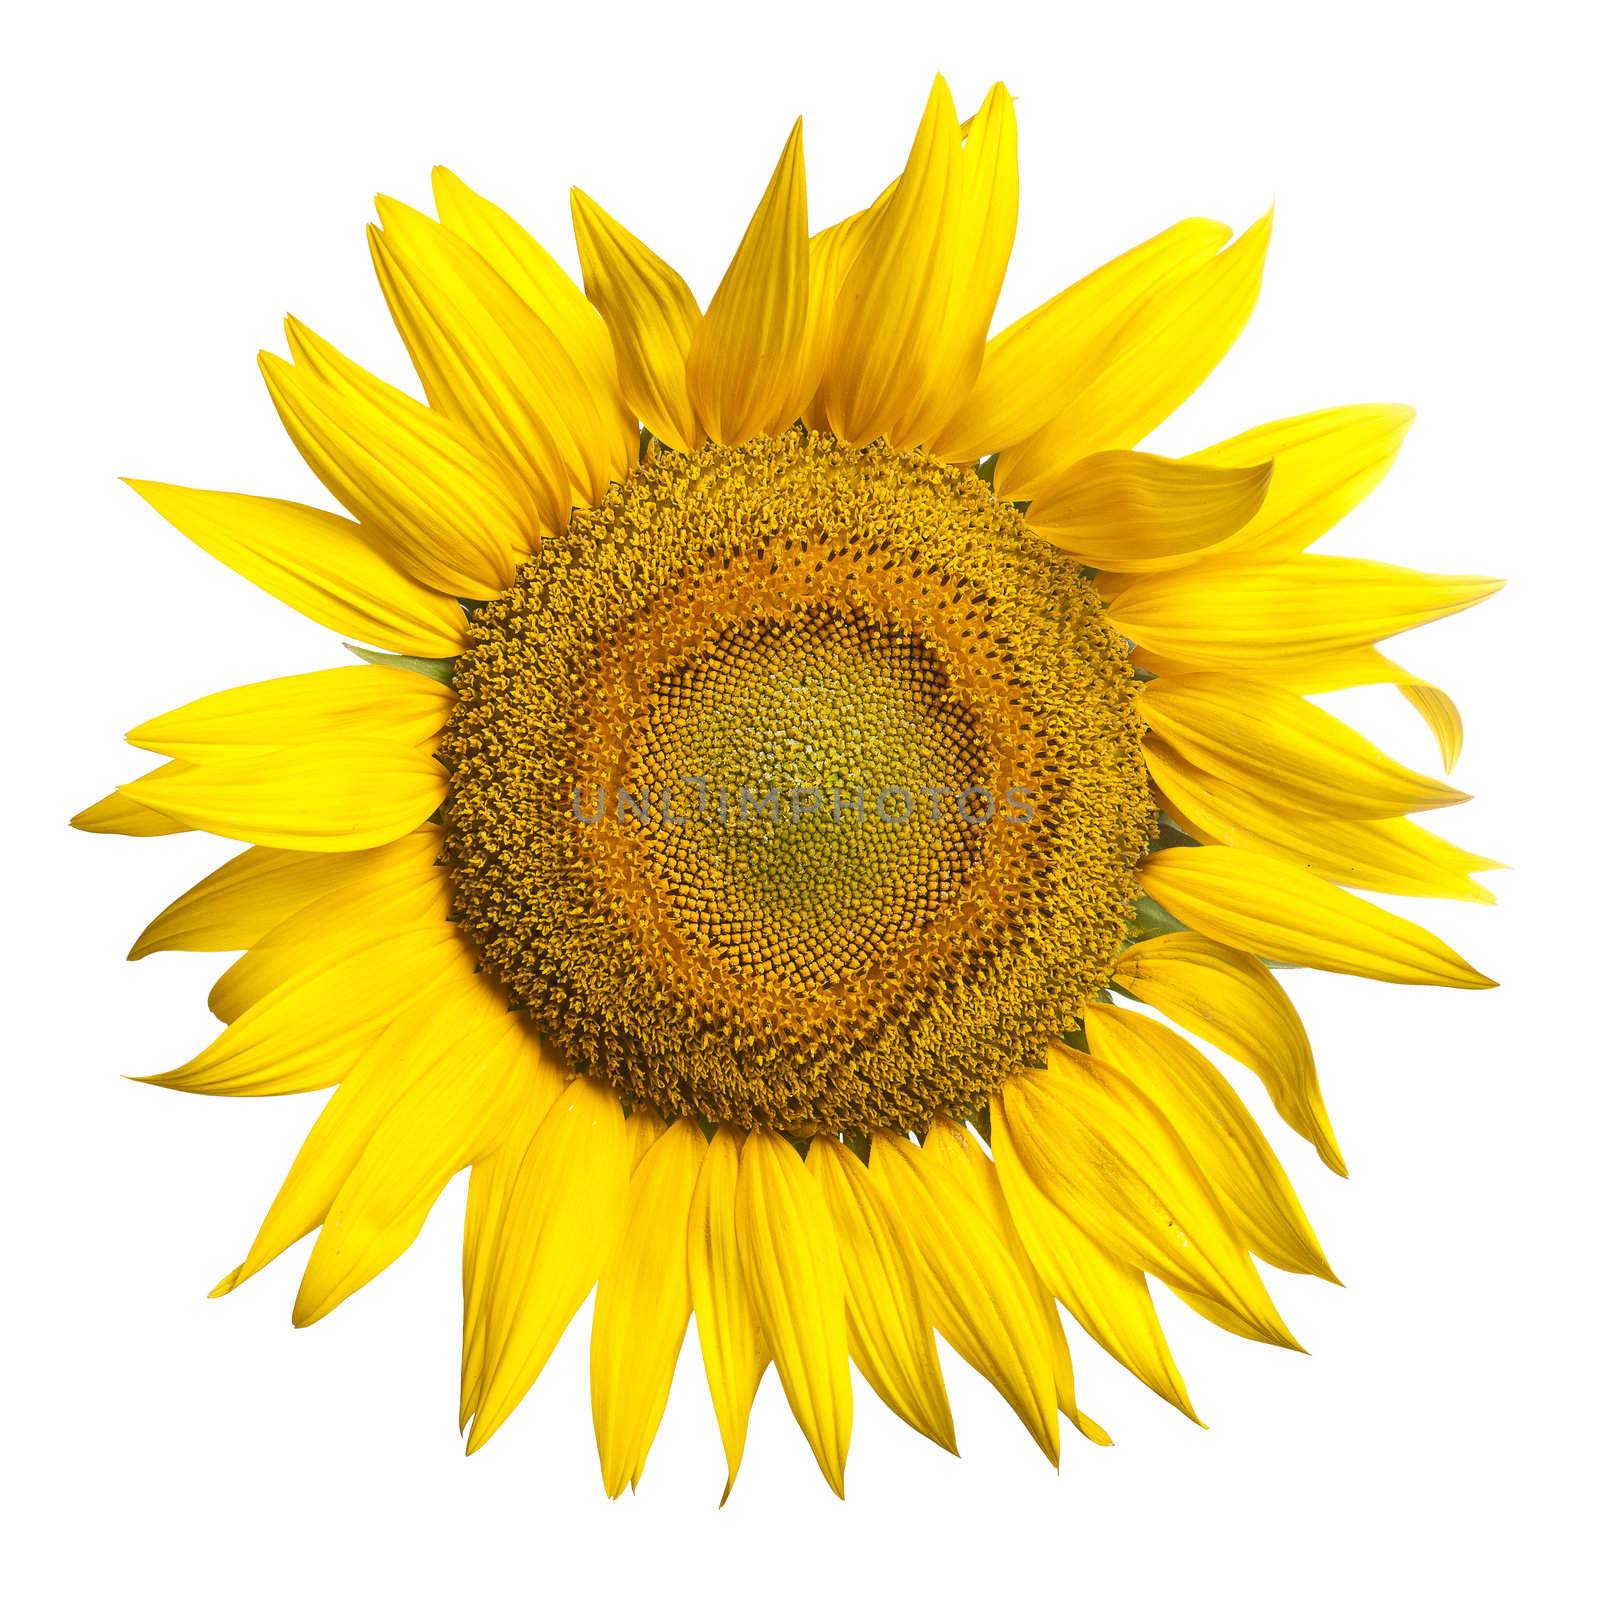 Sunflower by adamr